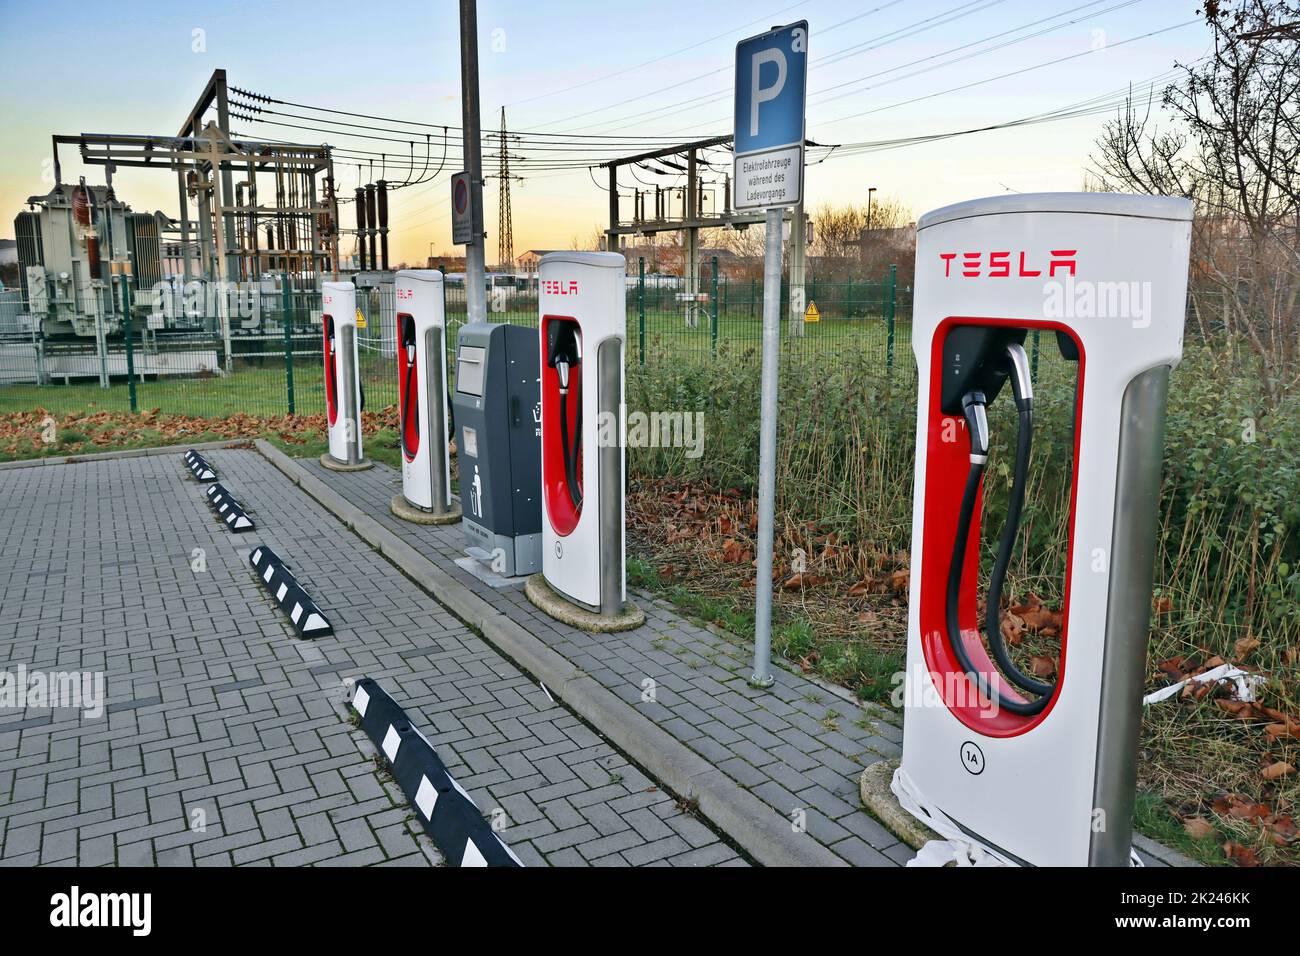 Testla Schnellladestation Supercharger neben einem Umspannwerk, Nordrhein-Westfalen, Deutschland, Erftstadt-Lechenich Banque D'Images